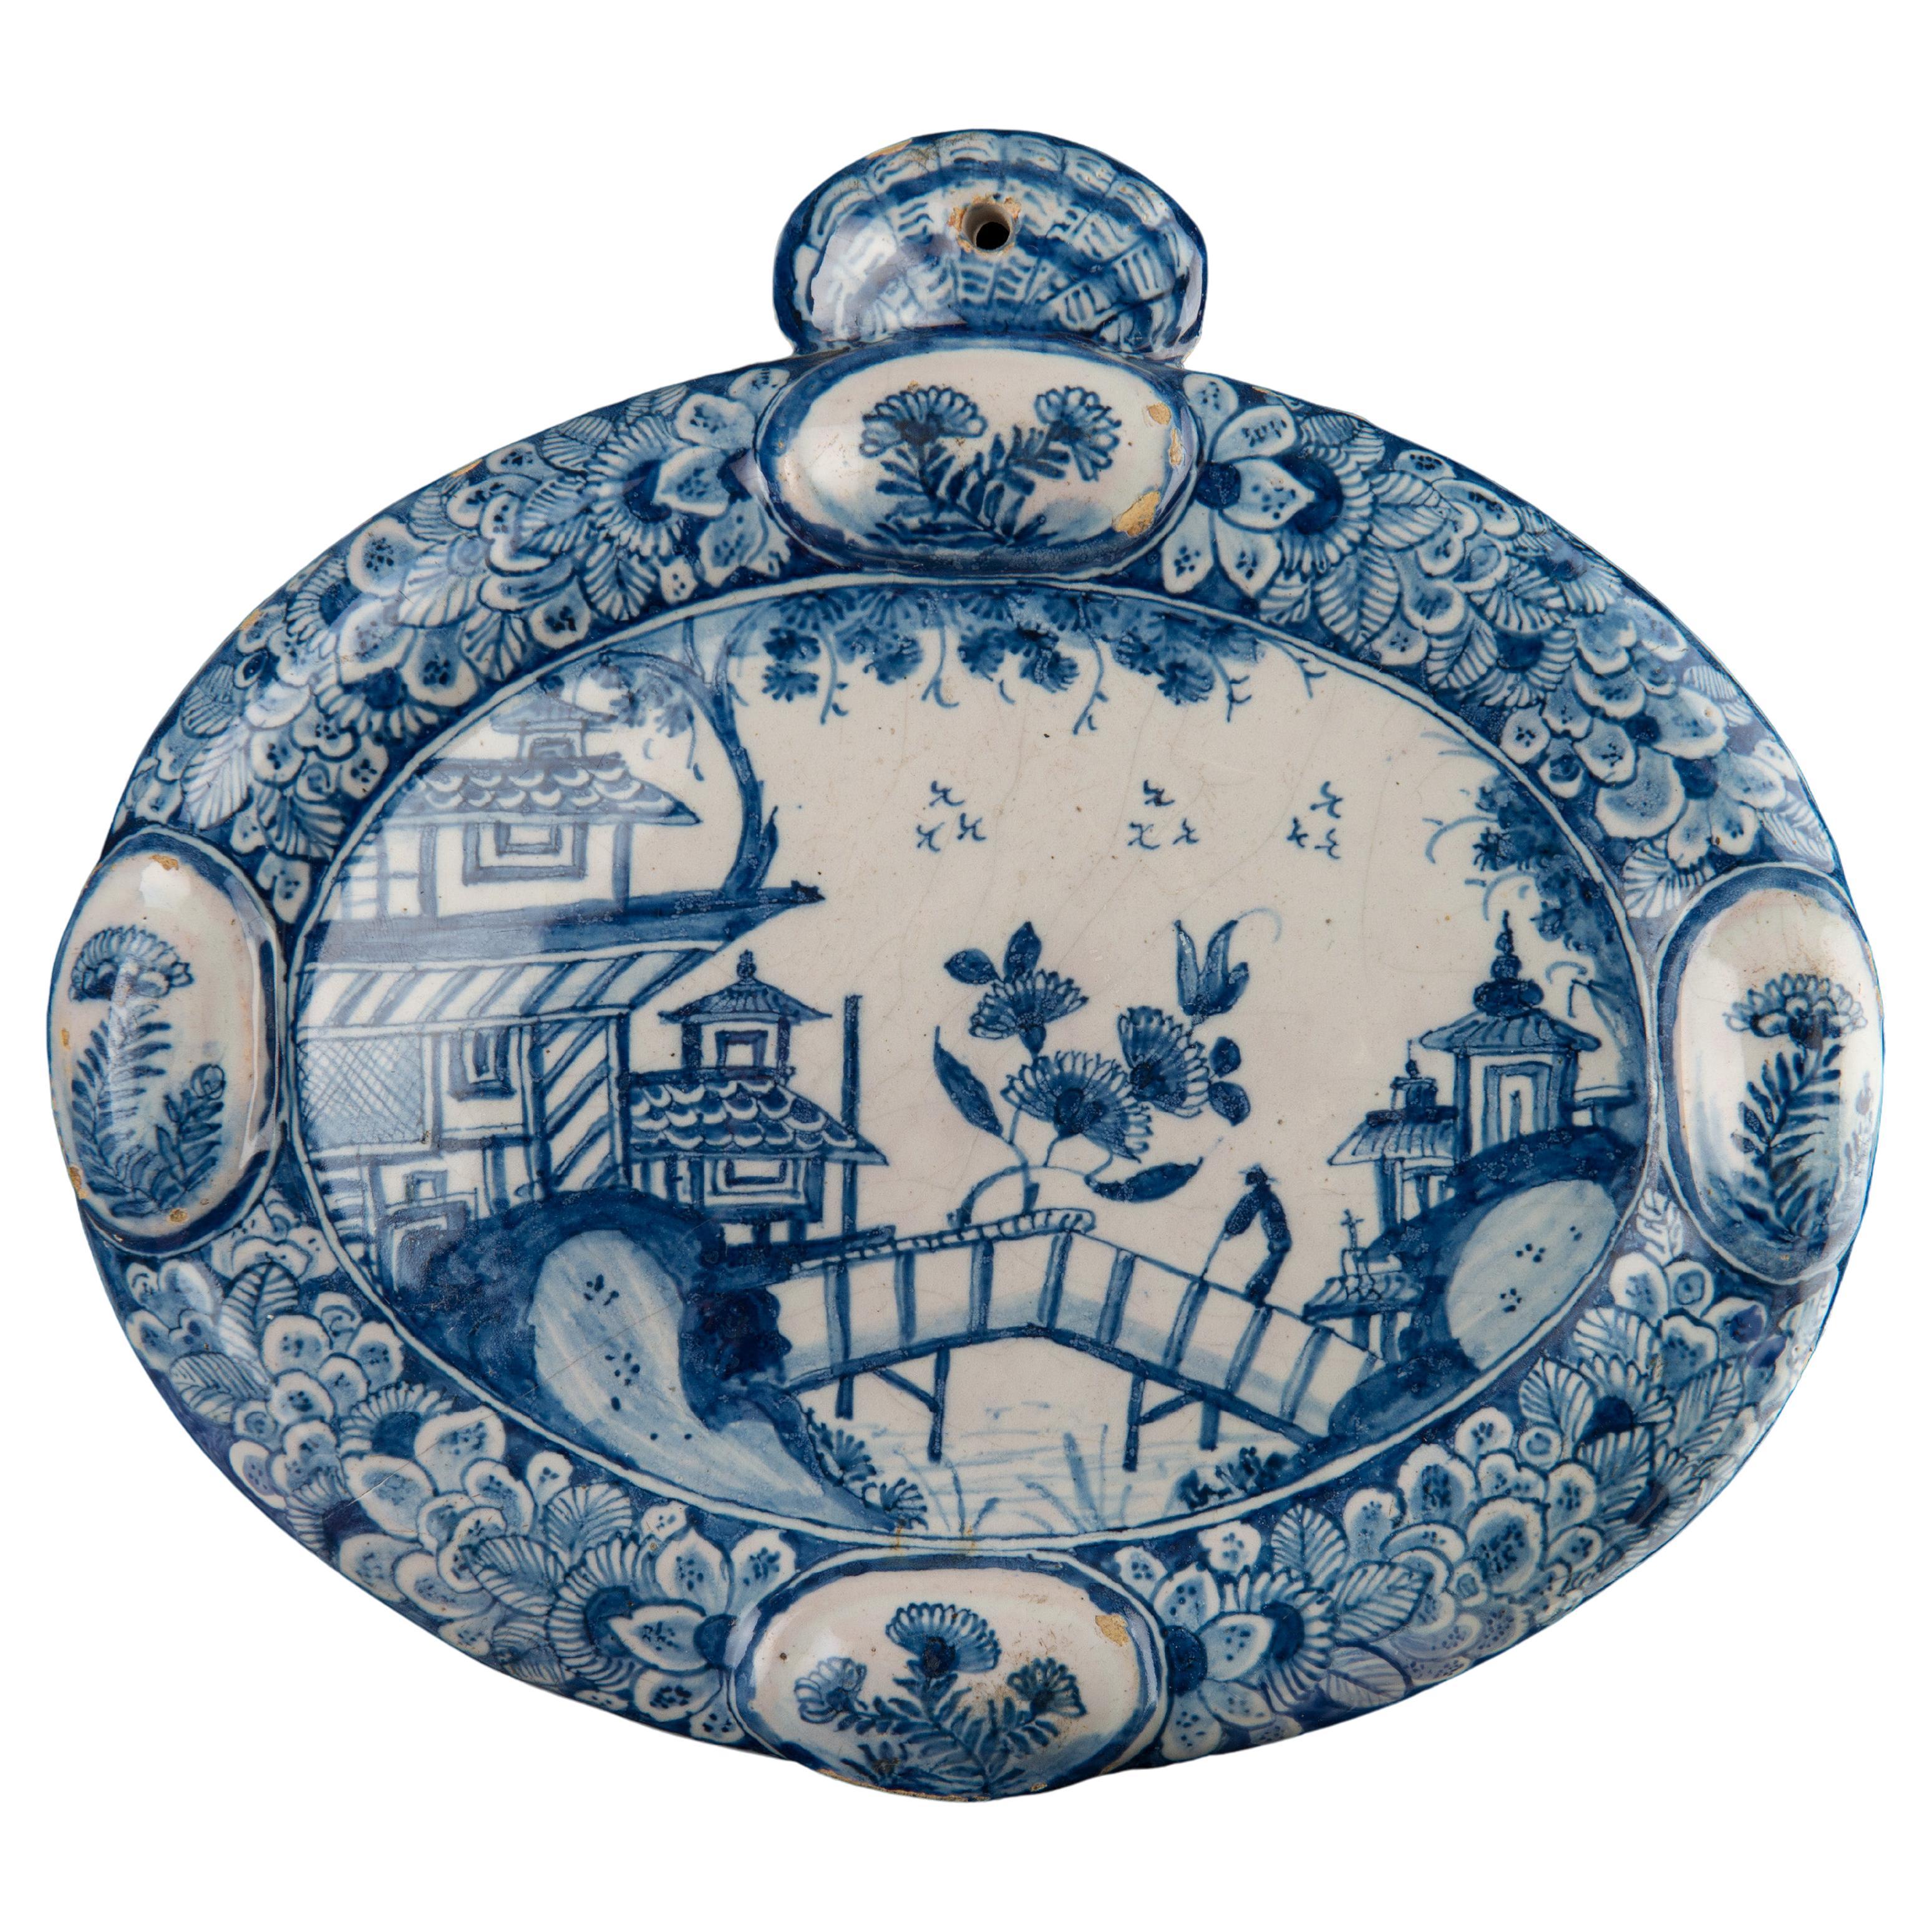 Niederländische Delft Blau und Weiß Keramik Chinoiserie Plaque. 1740-1760